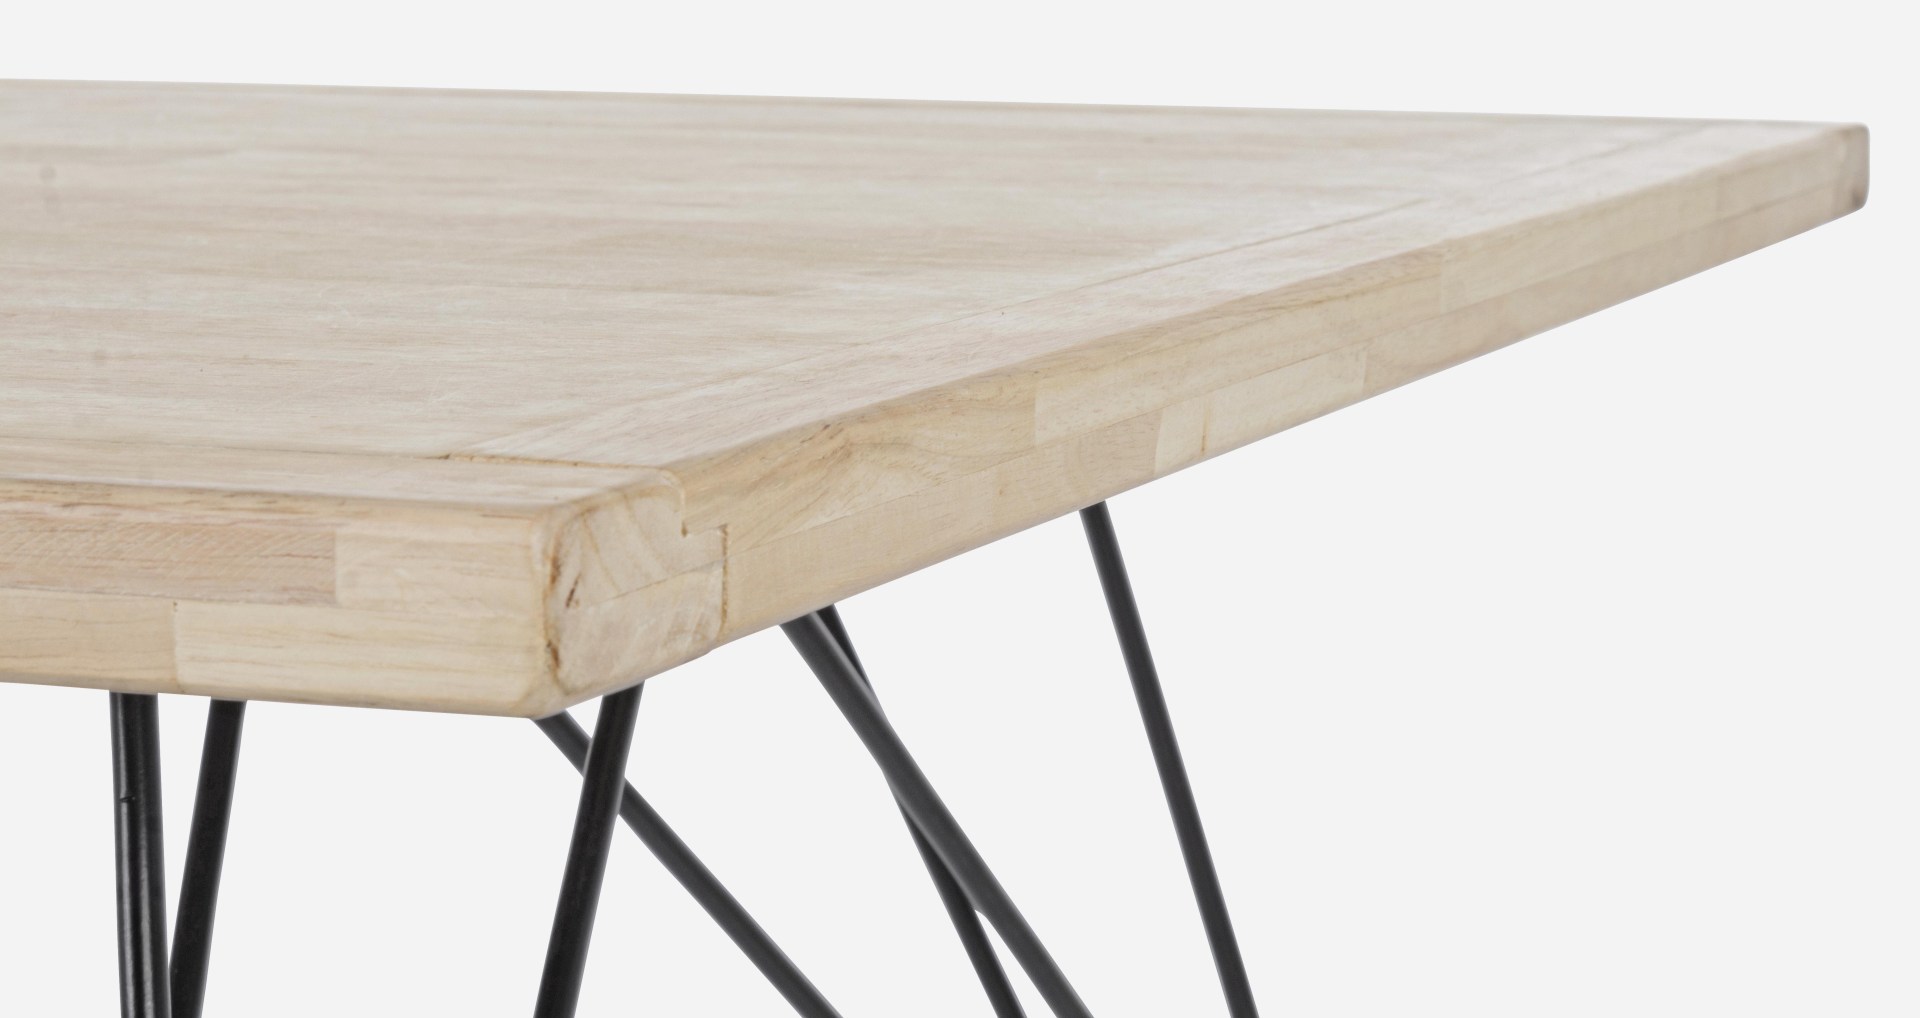 Der Esstisch District überzeugt mit seinem moderndem Design. Gefertigt wurde er aus Kautschukholz, welches einen natürlichen Farbton besitzt. Das Gestell des Tisches ist aus Metall und ist in eine schwarze Farbe. Der Tisch besitzt eine Breite von 160 cm.